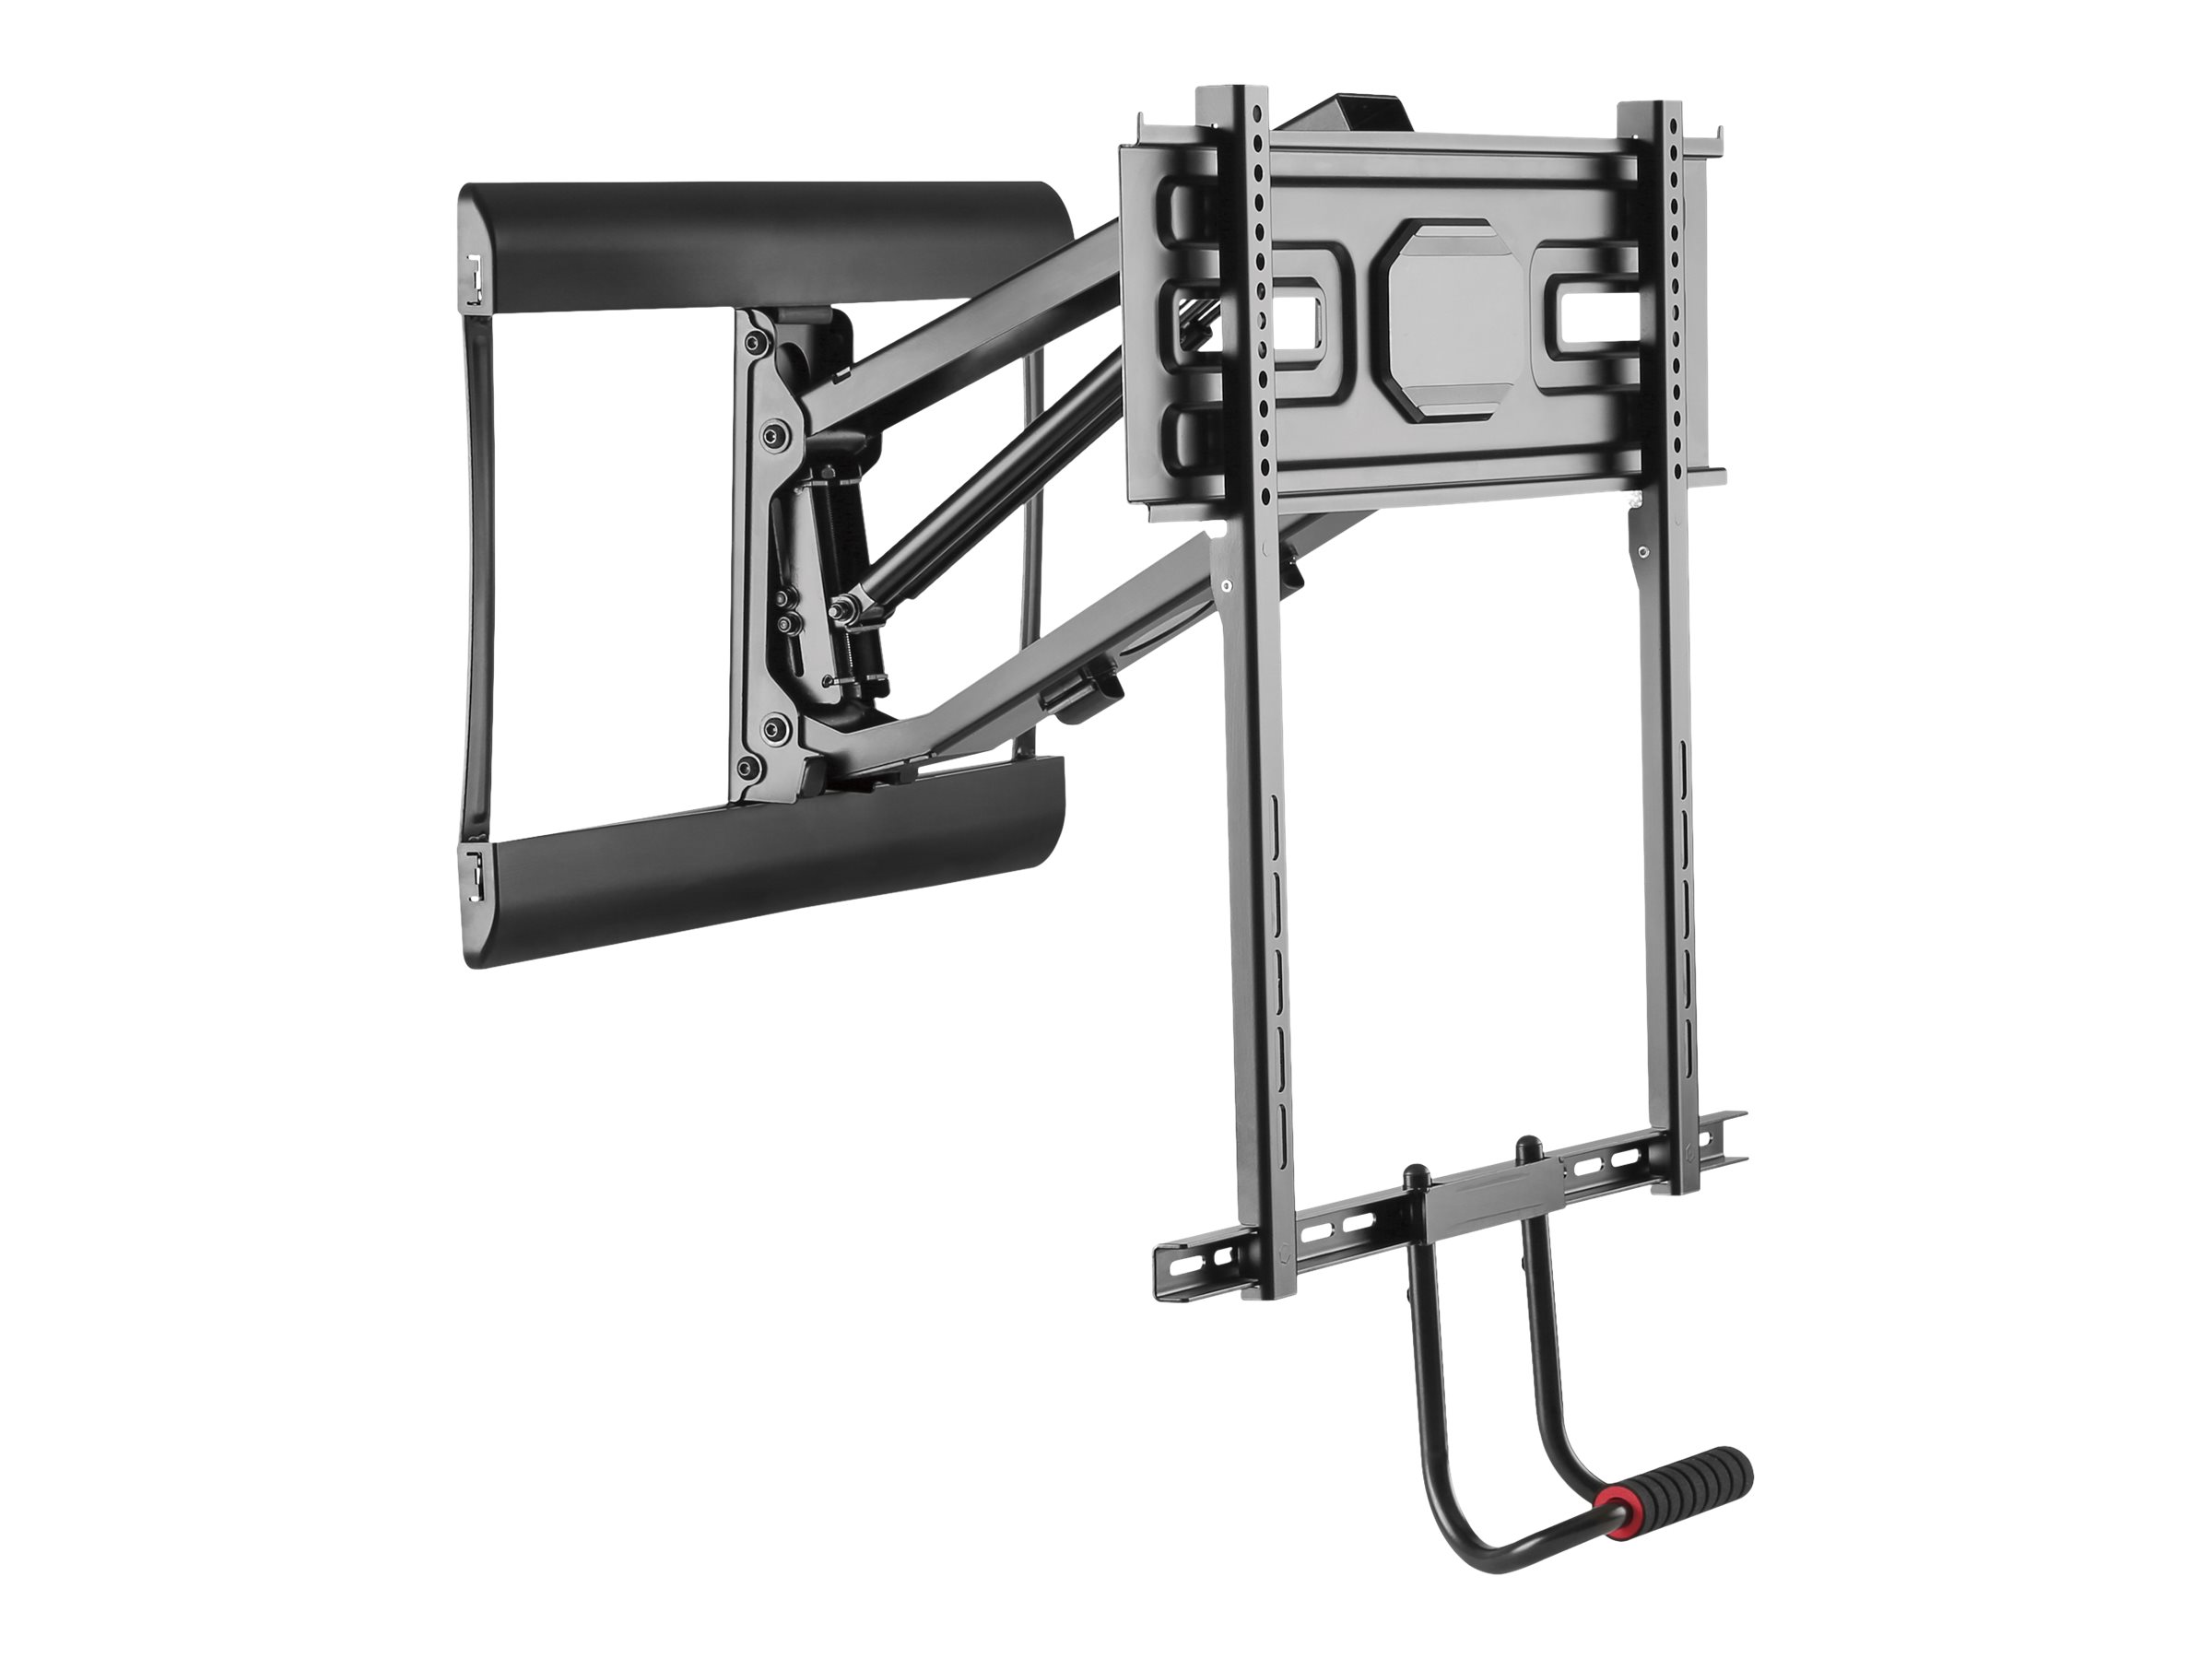 Equip Pro - Klammer - Pull-Down - für Flachbildschirm - Kunststoff, Stahl - Schwarz - Bildschirmgröß